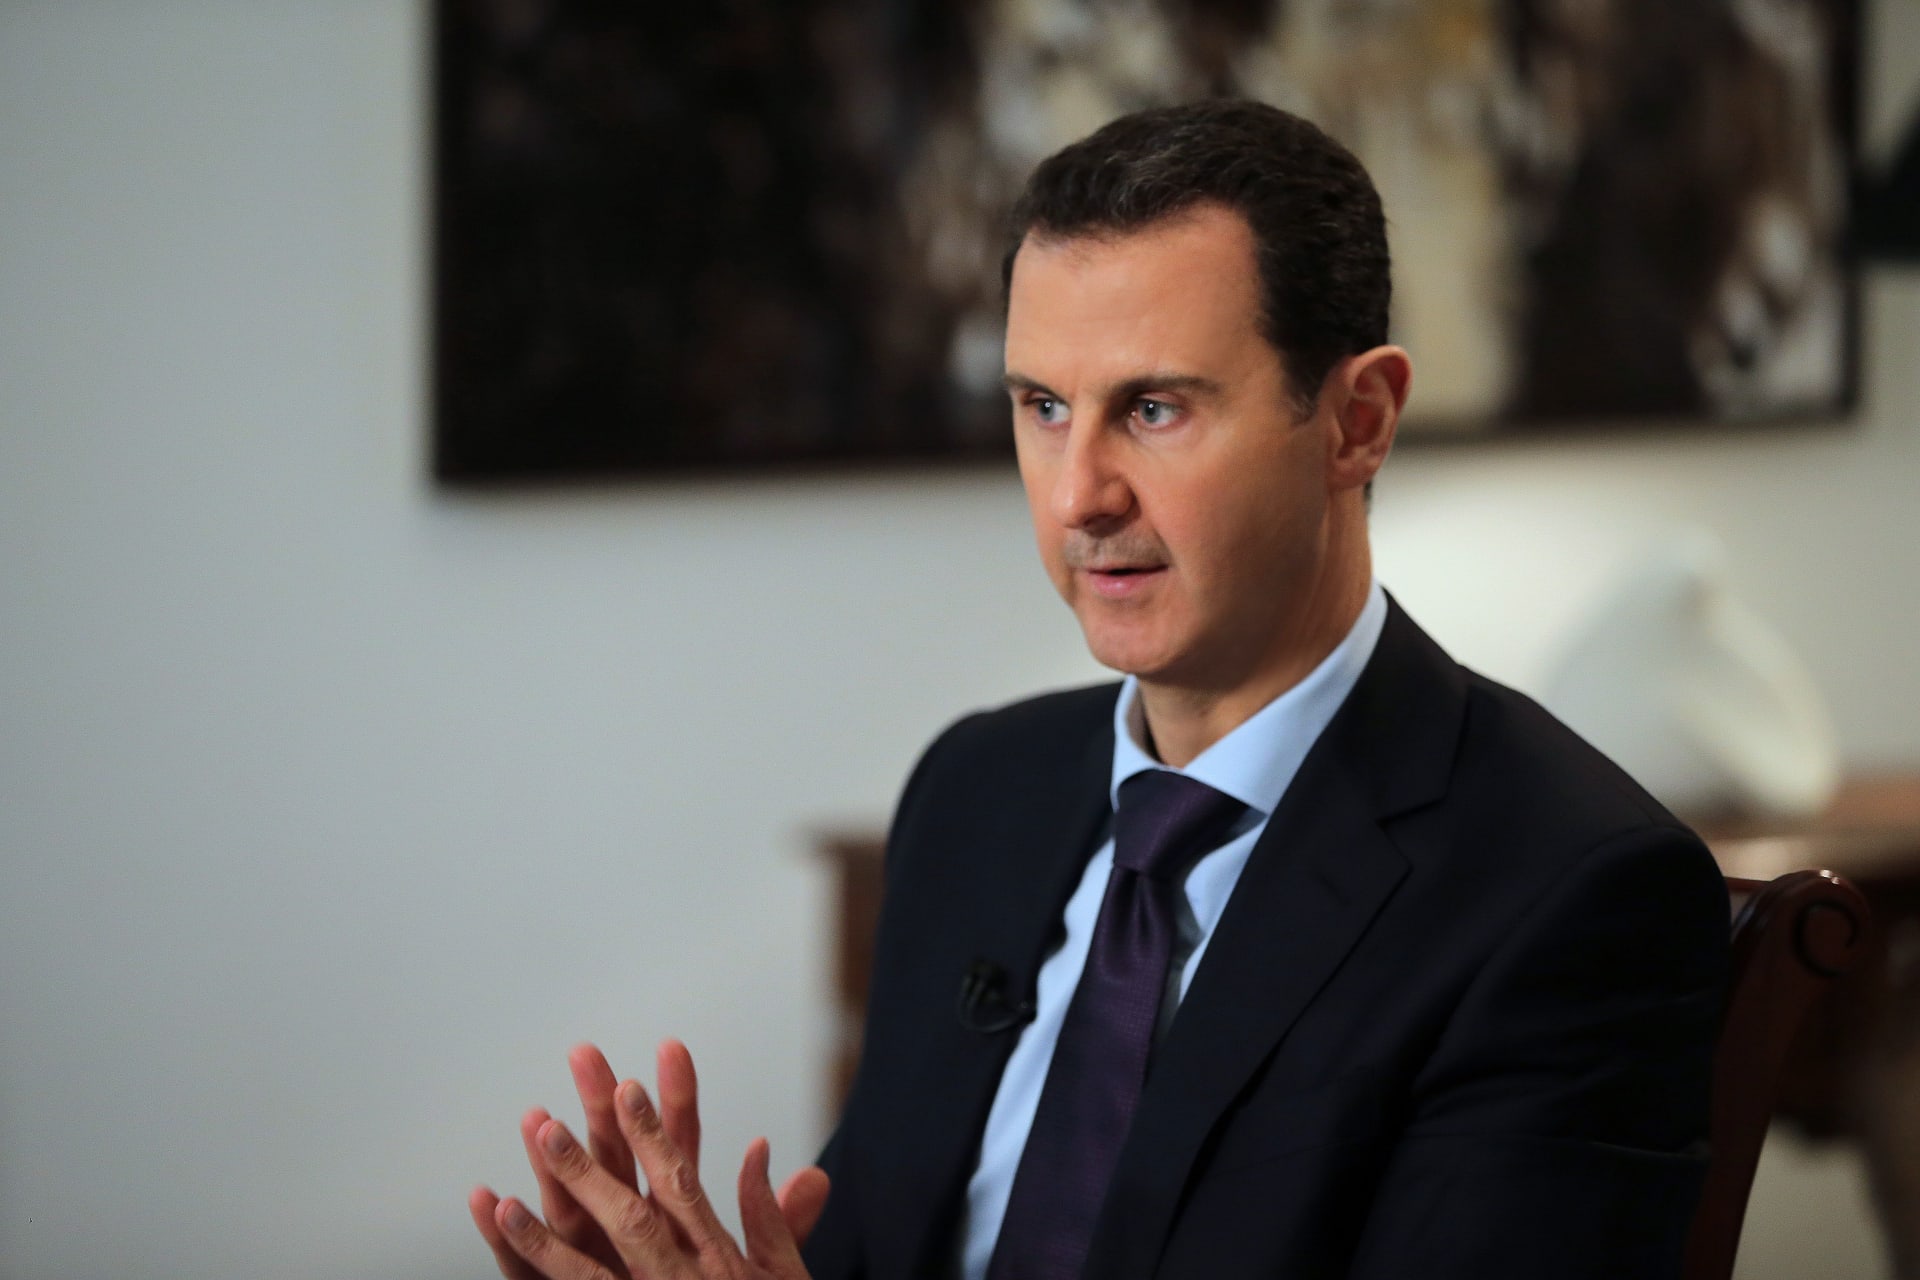 صورة متداولة.. بشار الأسد وعائلته يتناولون الشاورما في دمشق وتباين في ردود الفعل